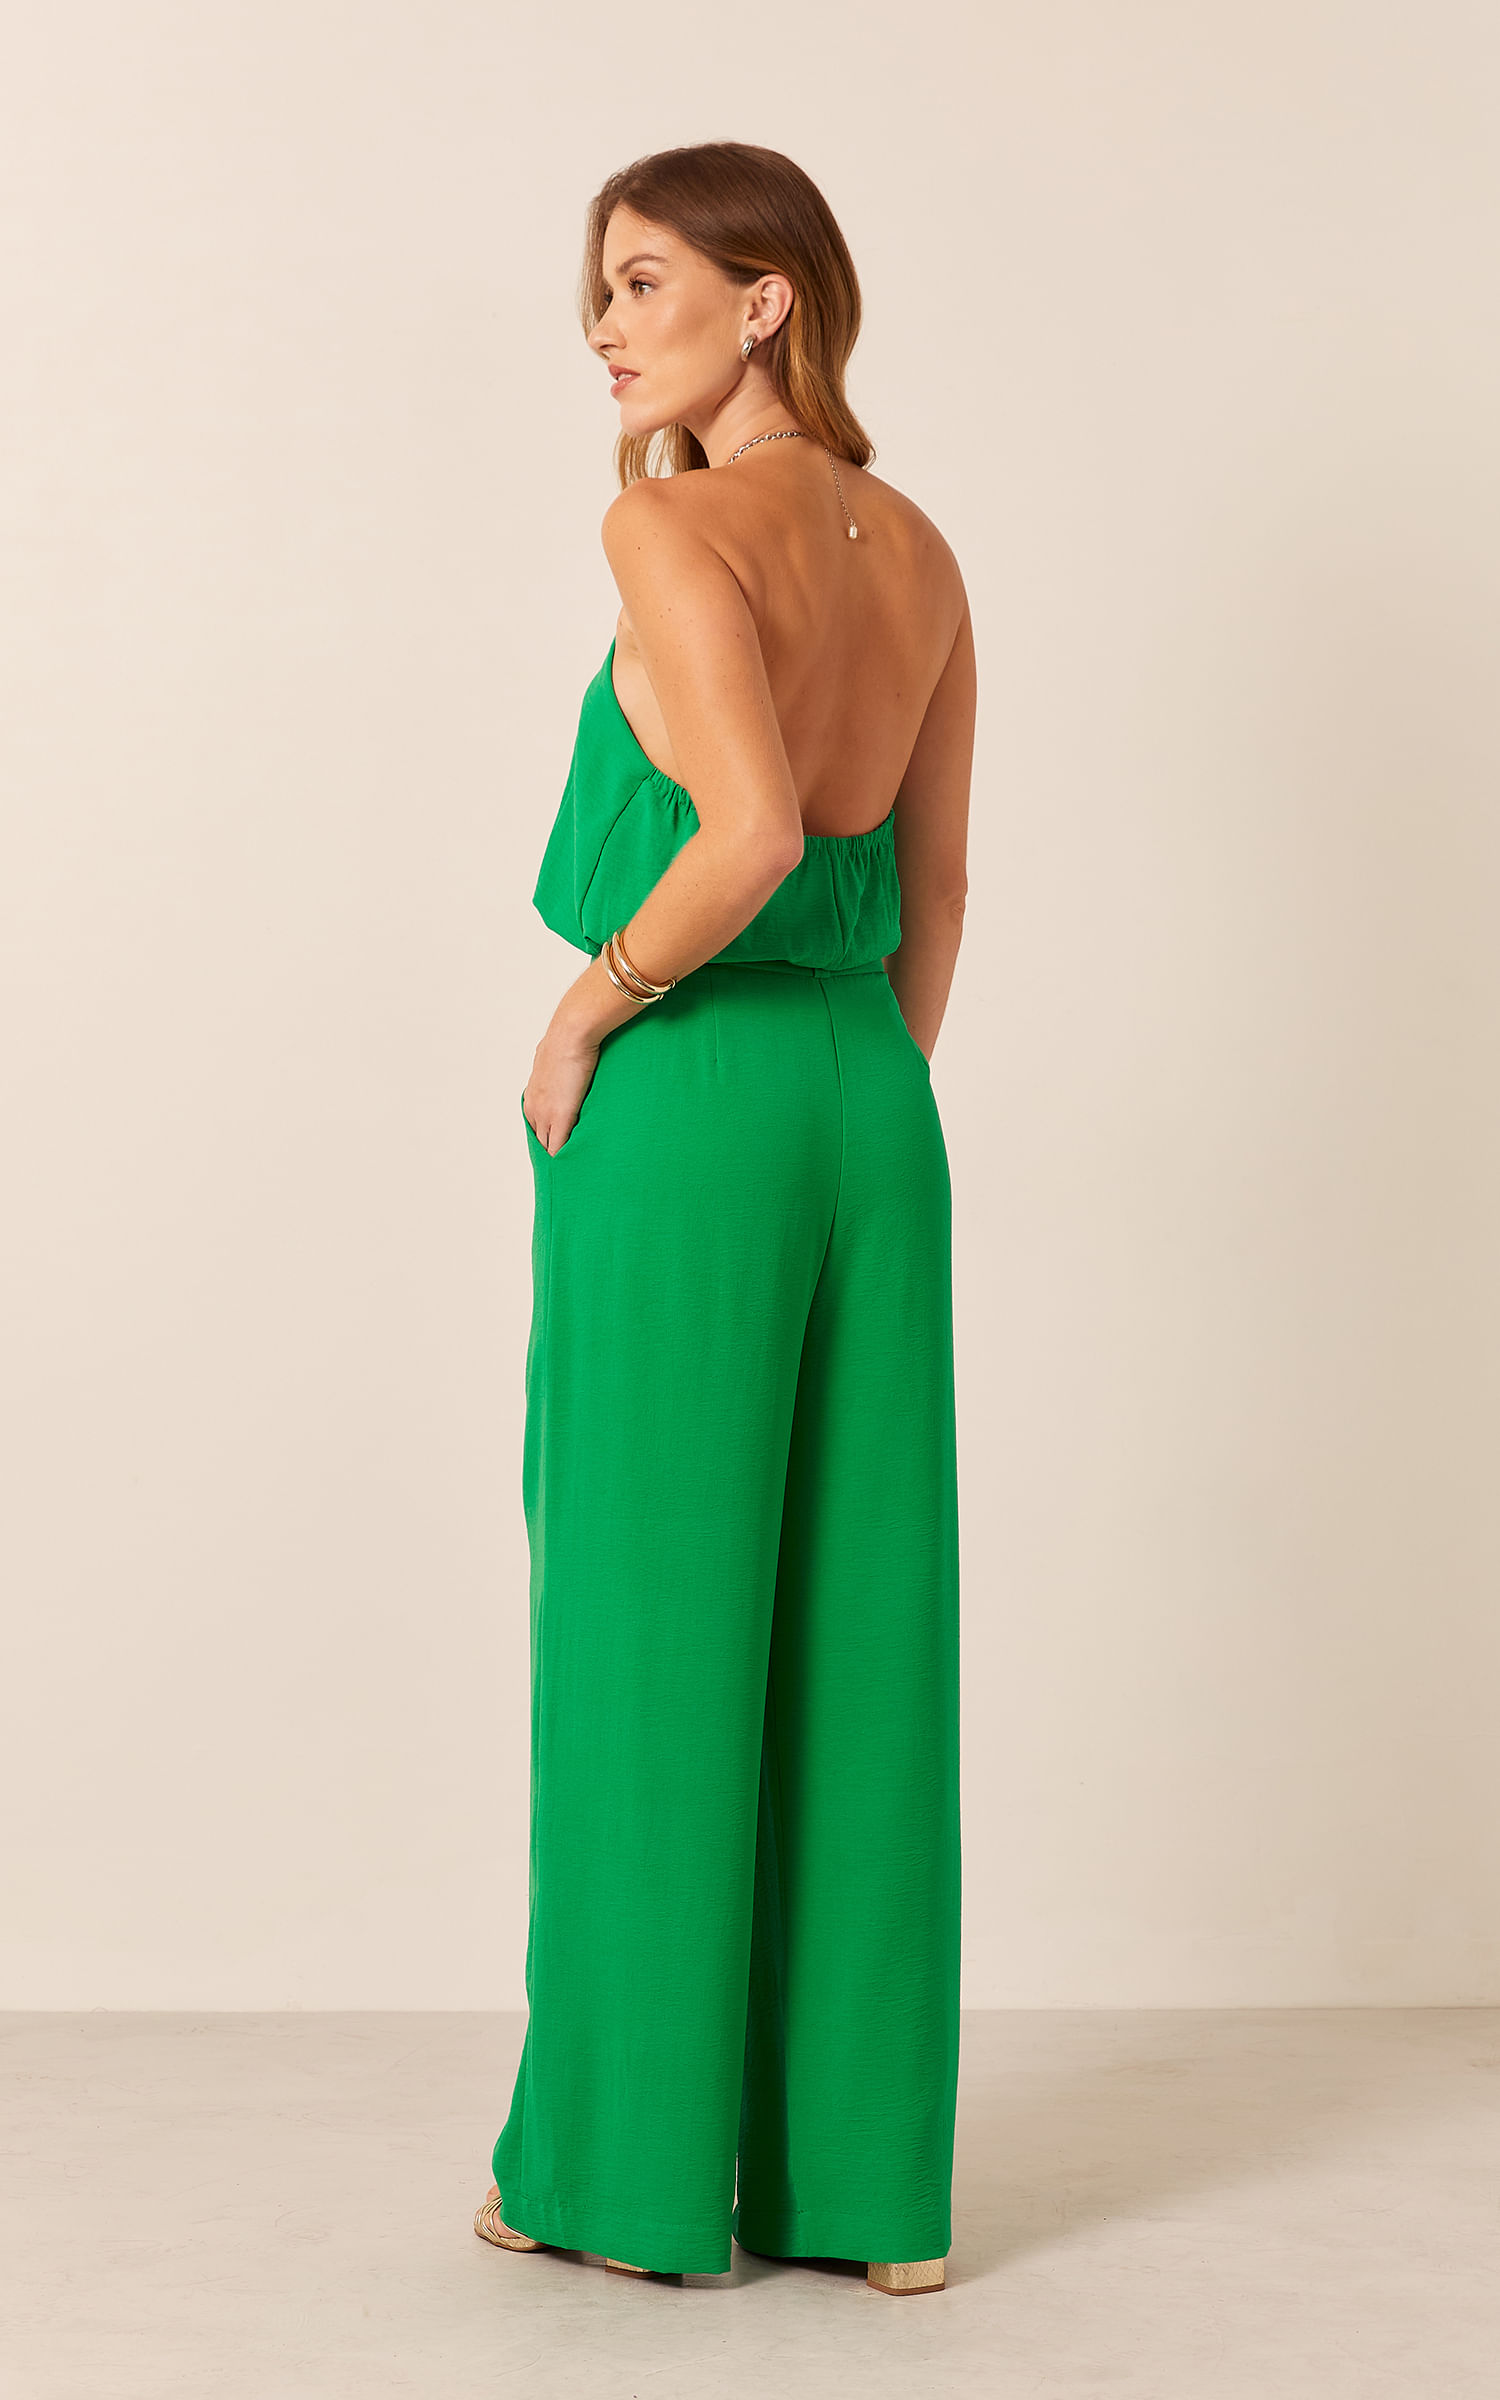 Pantalona Linen Fresh Pregas Verde | MAG MODA - Loja de Roupas Femininas